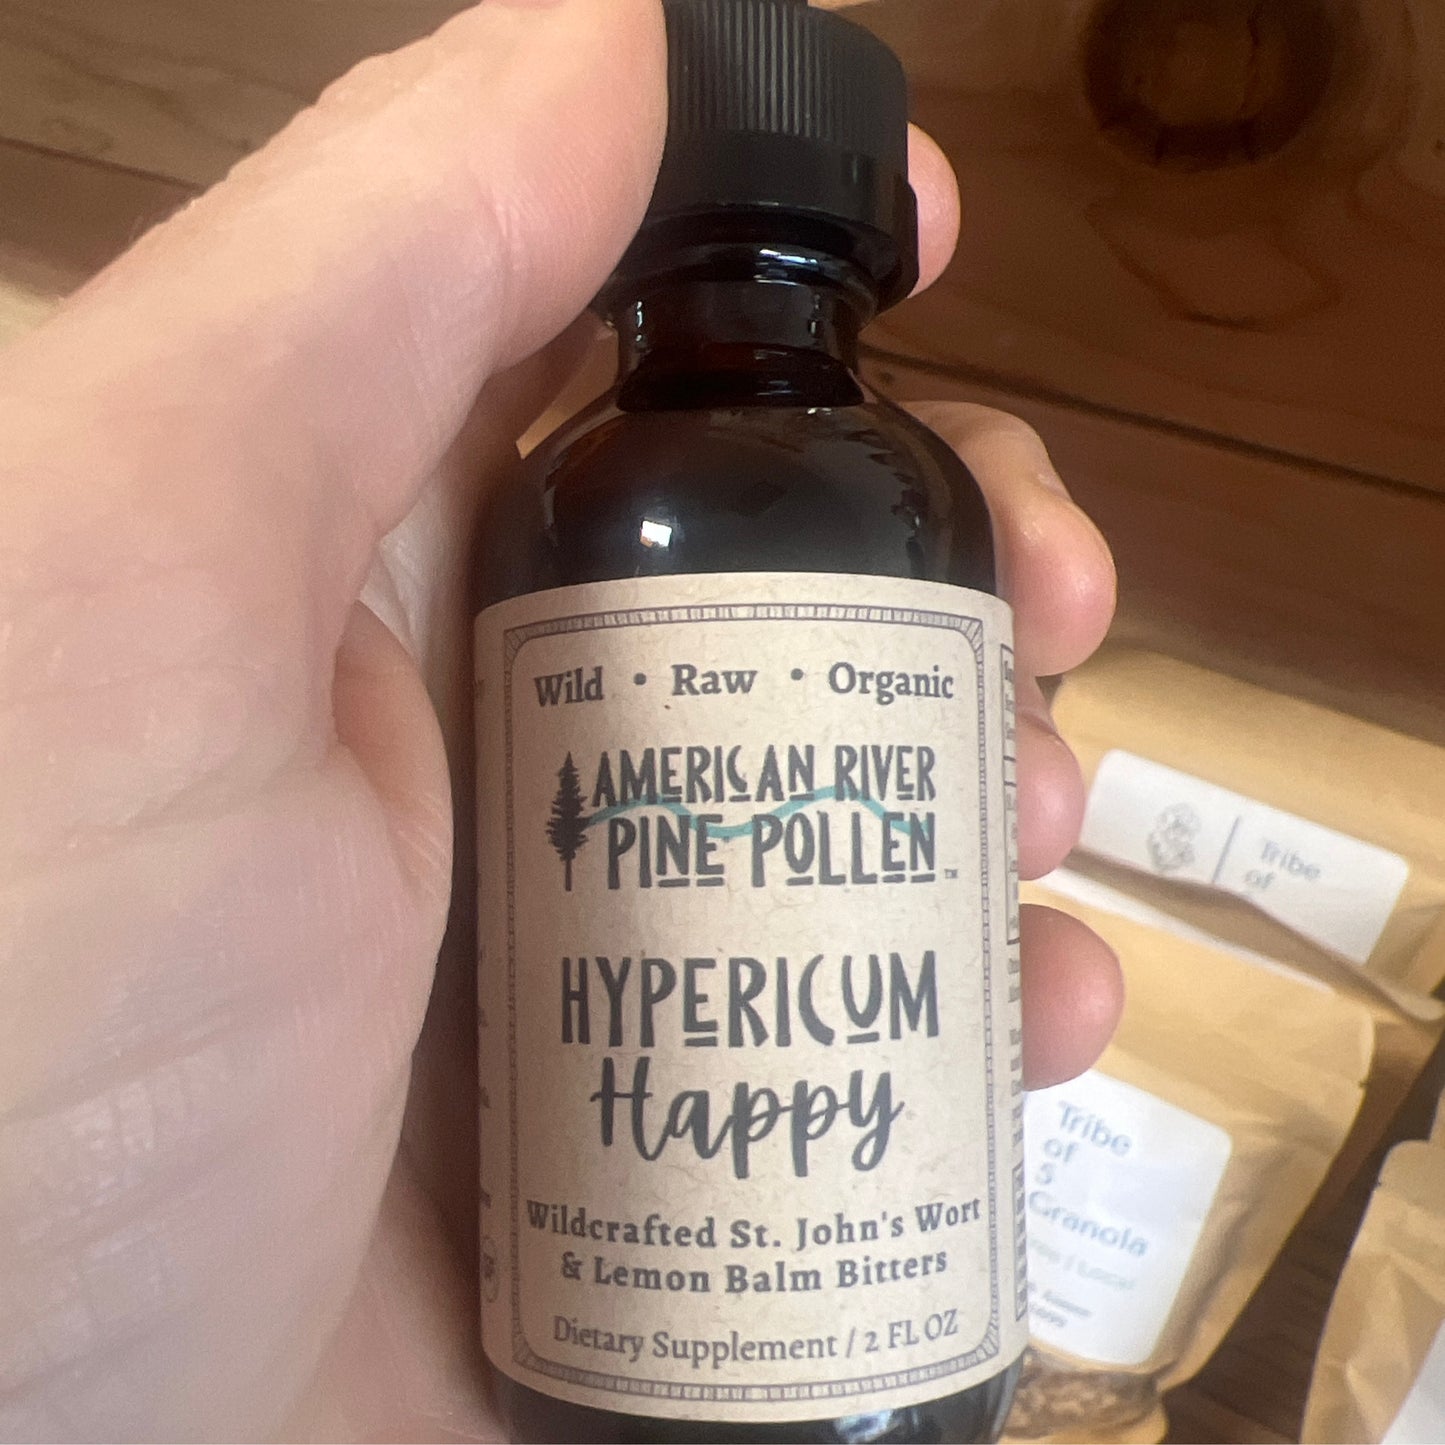 Hypericum Happy